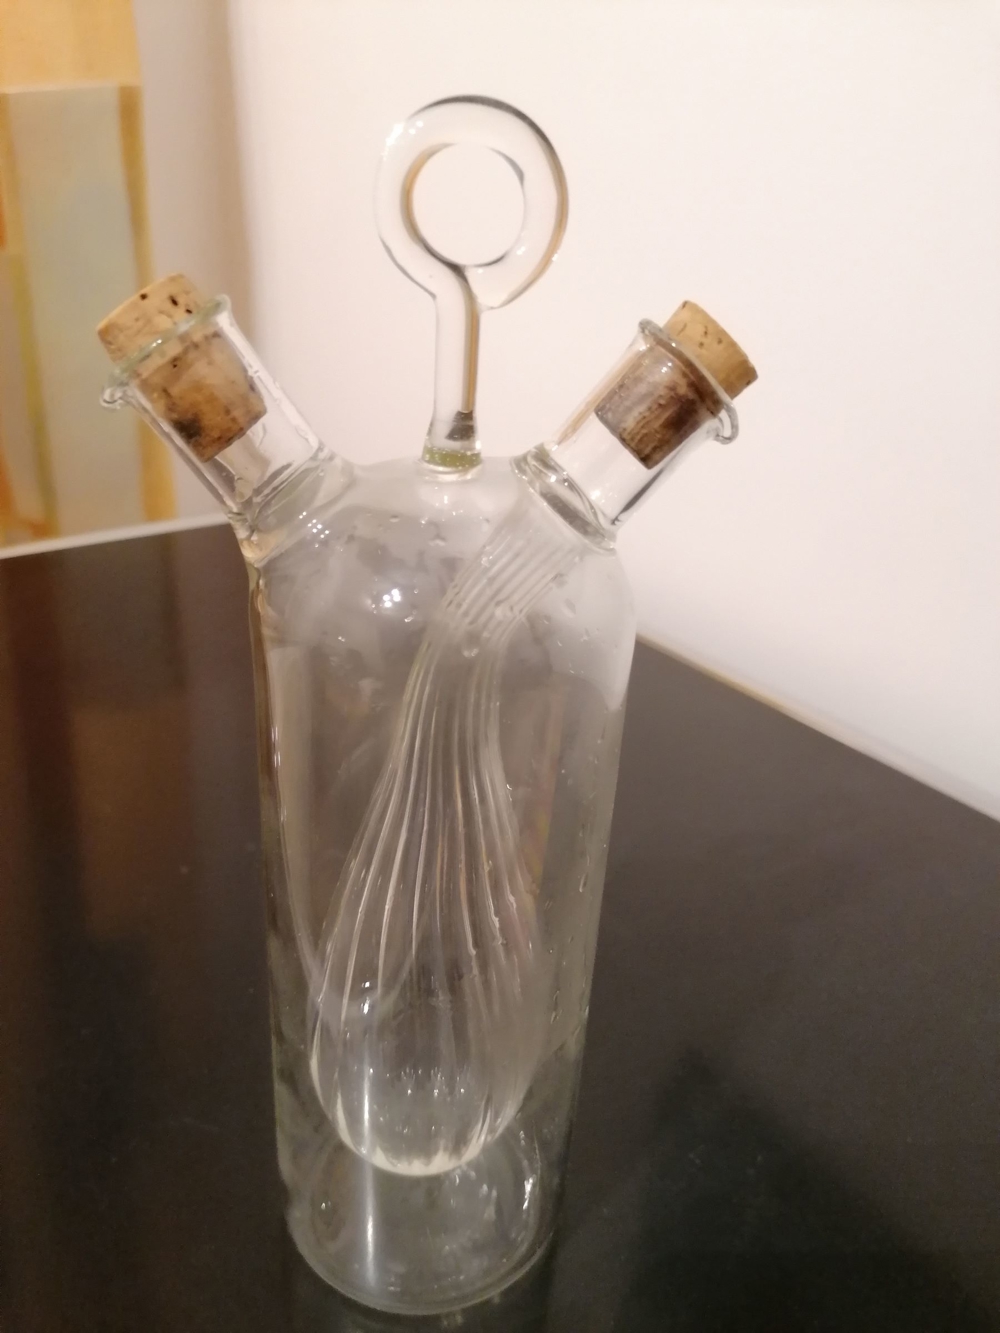 Essig-Öl-Flasche aus Glas, 2 in 1